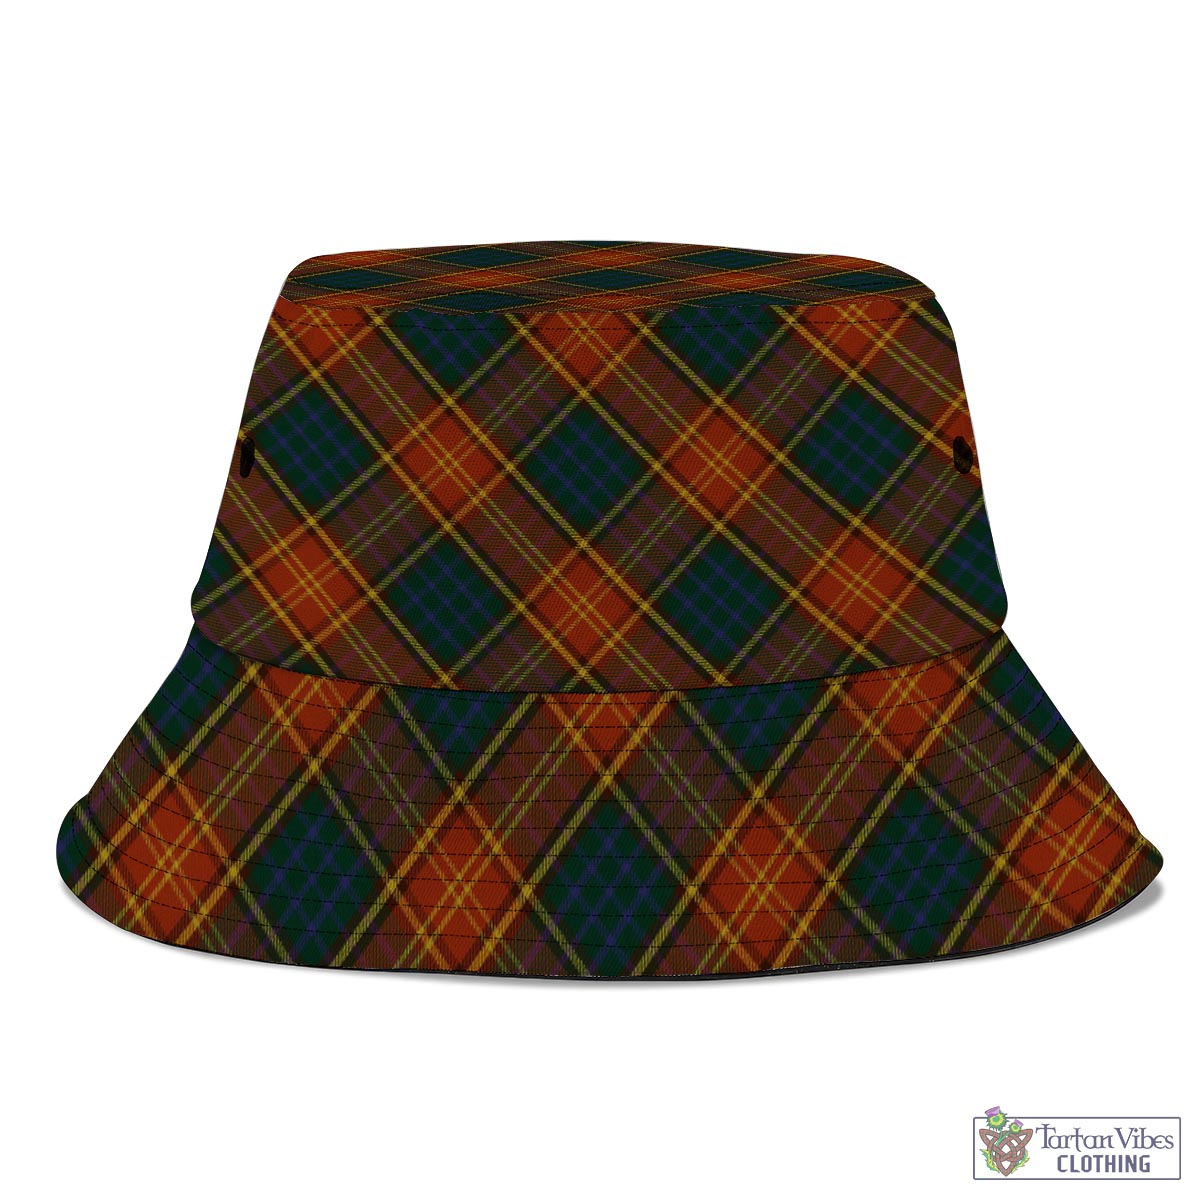 Tartan Vibes Clothing Roscommon County Ireland Tartan Bucket Hat